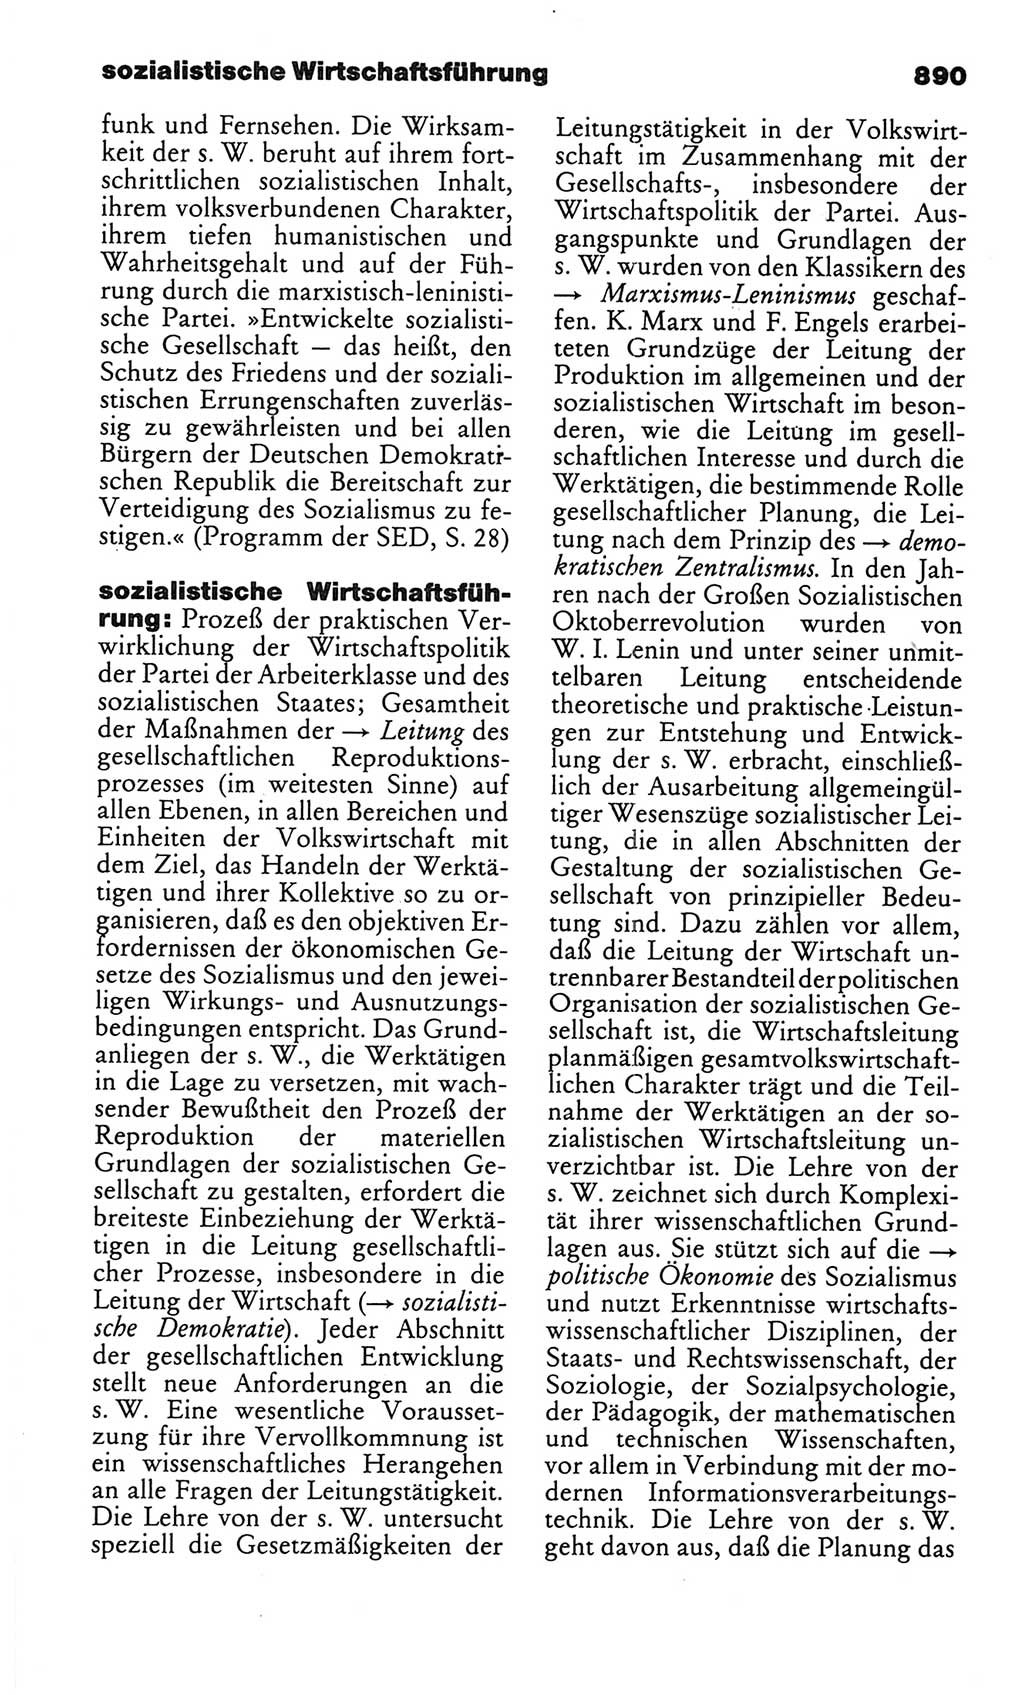 Kleines politisches Wörterbuch [Deutsche Demokratische Republik (DDR)] 1986, Seite 890 (Kl. pol. Wb. DDR 1986, S. 890)